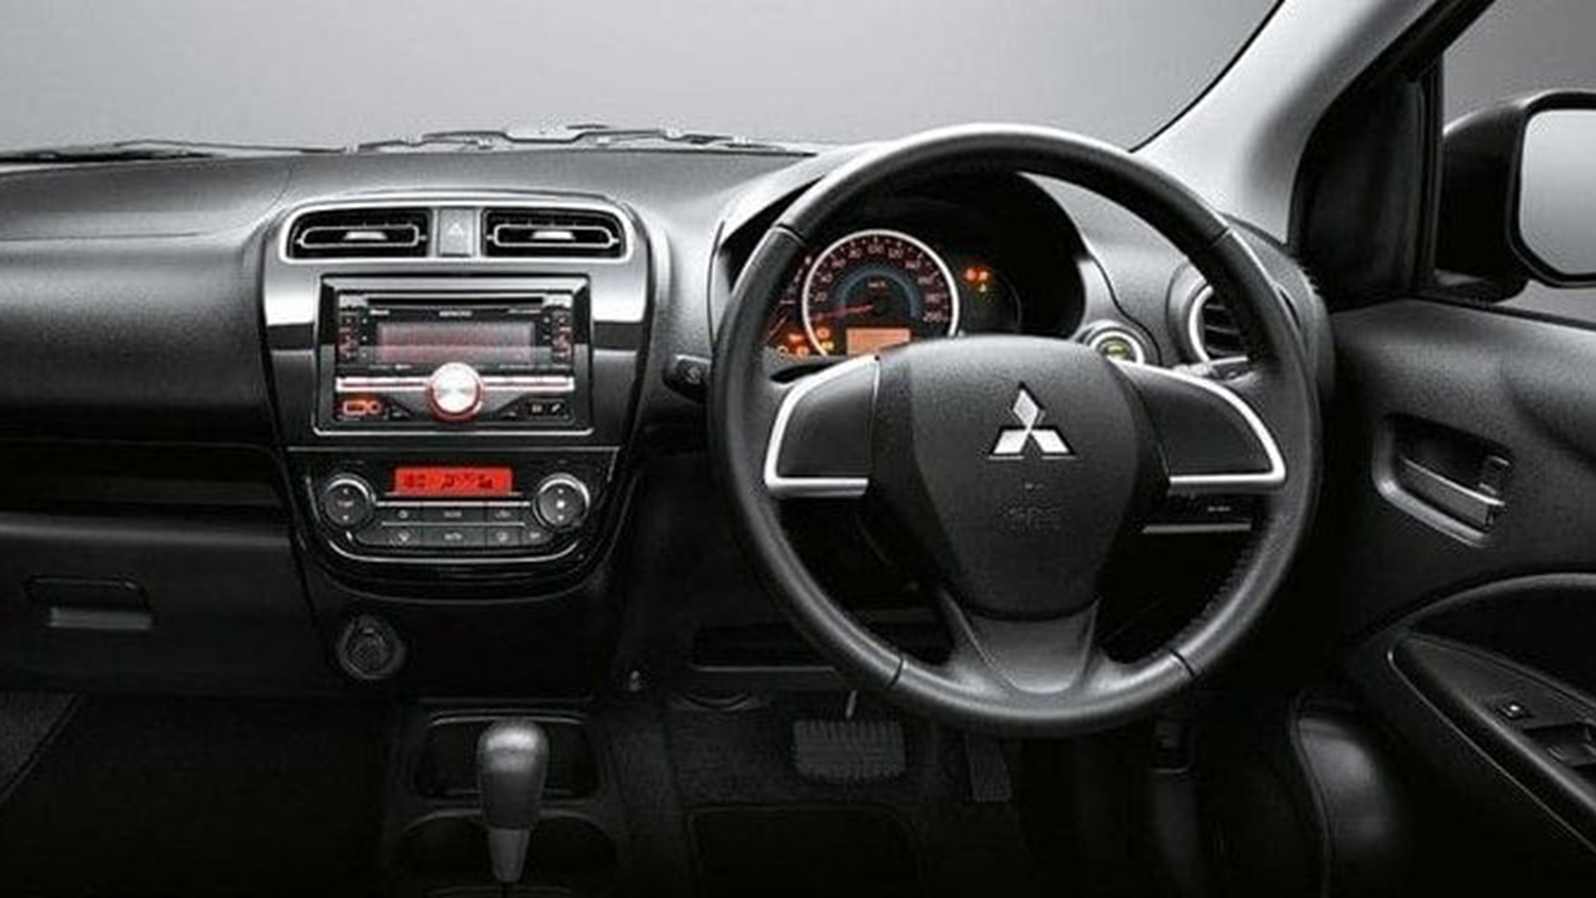 2014 Mitsubishi Attrage GS 1.2L Interior 001